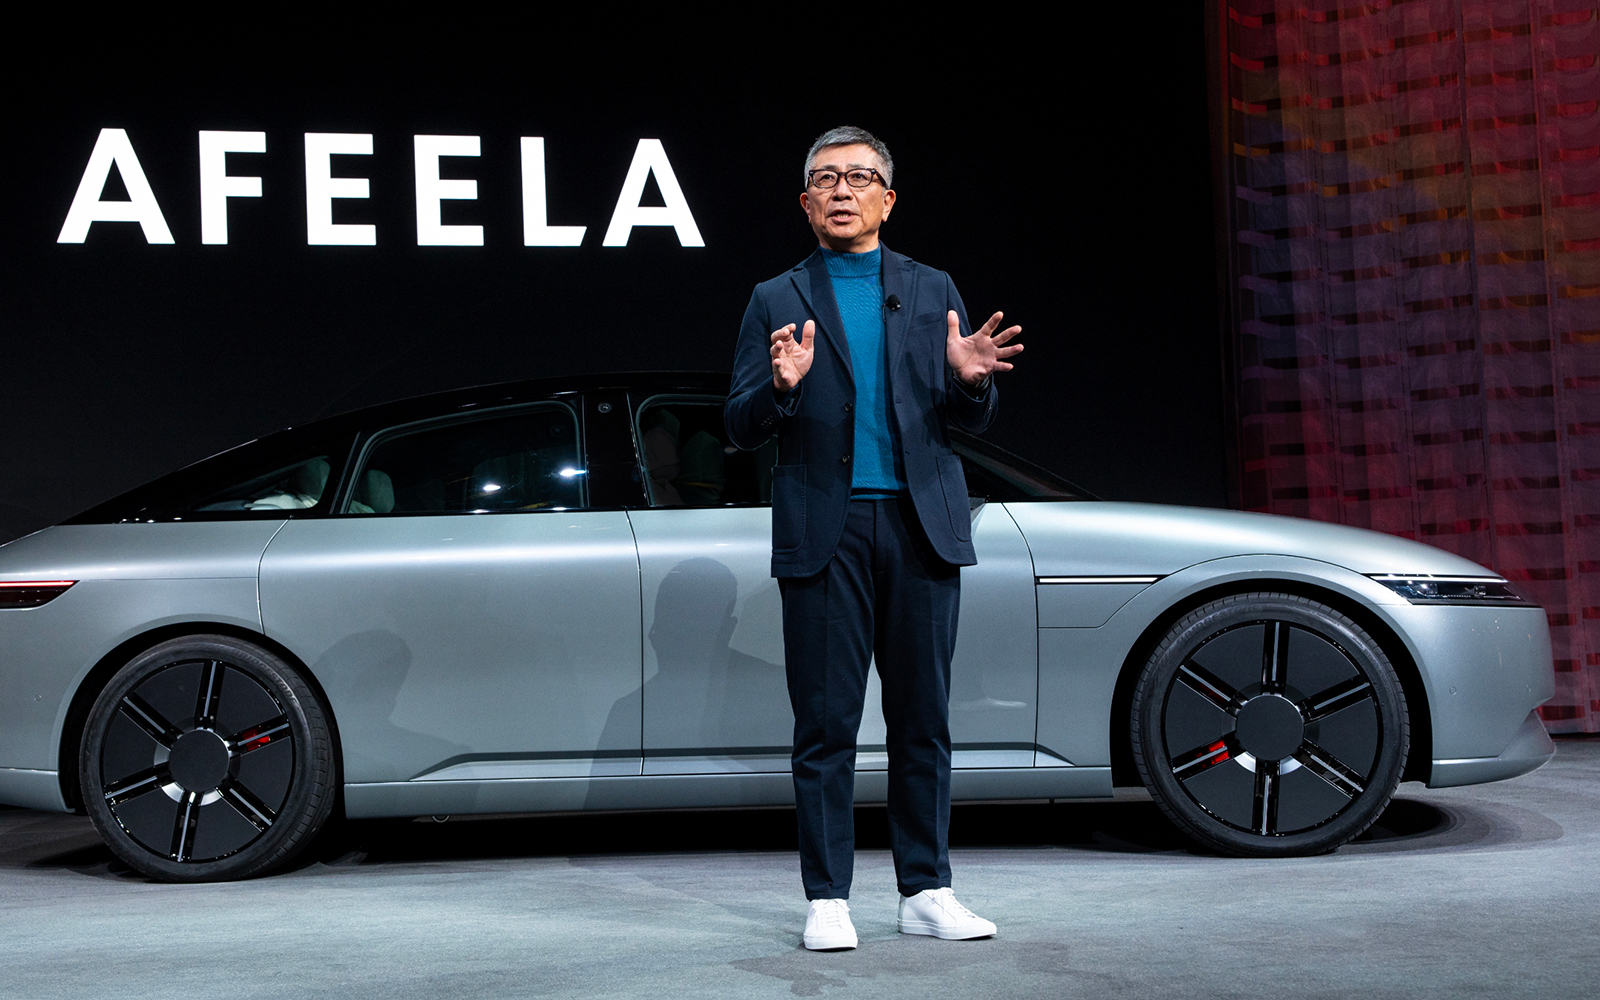 Nasce il marchio Afeela, Sony e Honda accelerano verso l’auto digitale